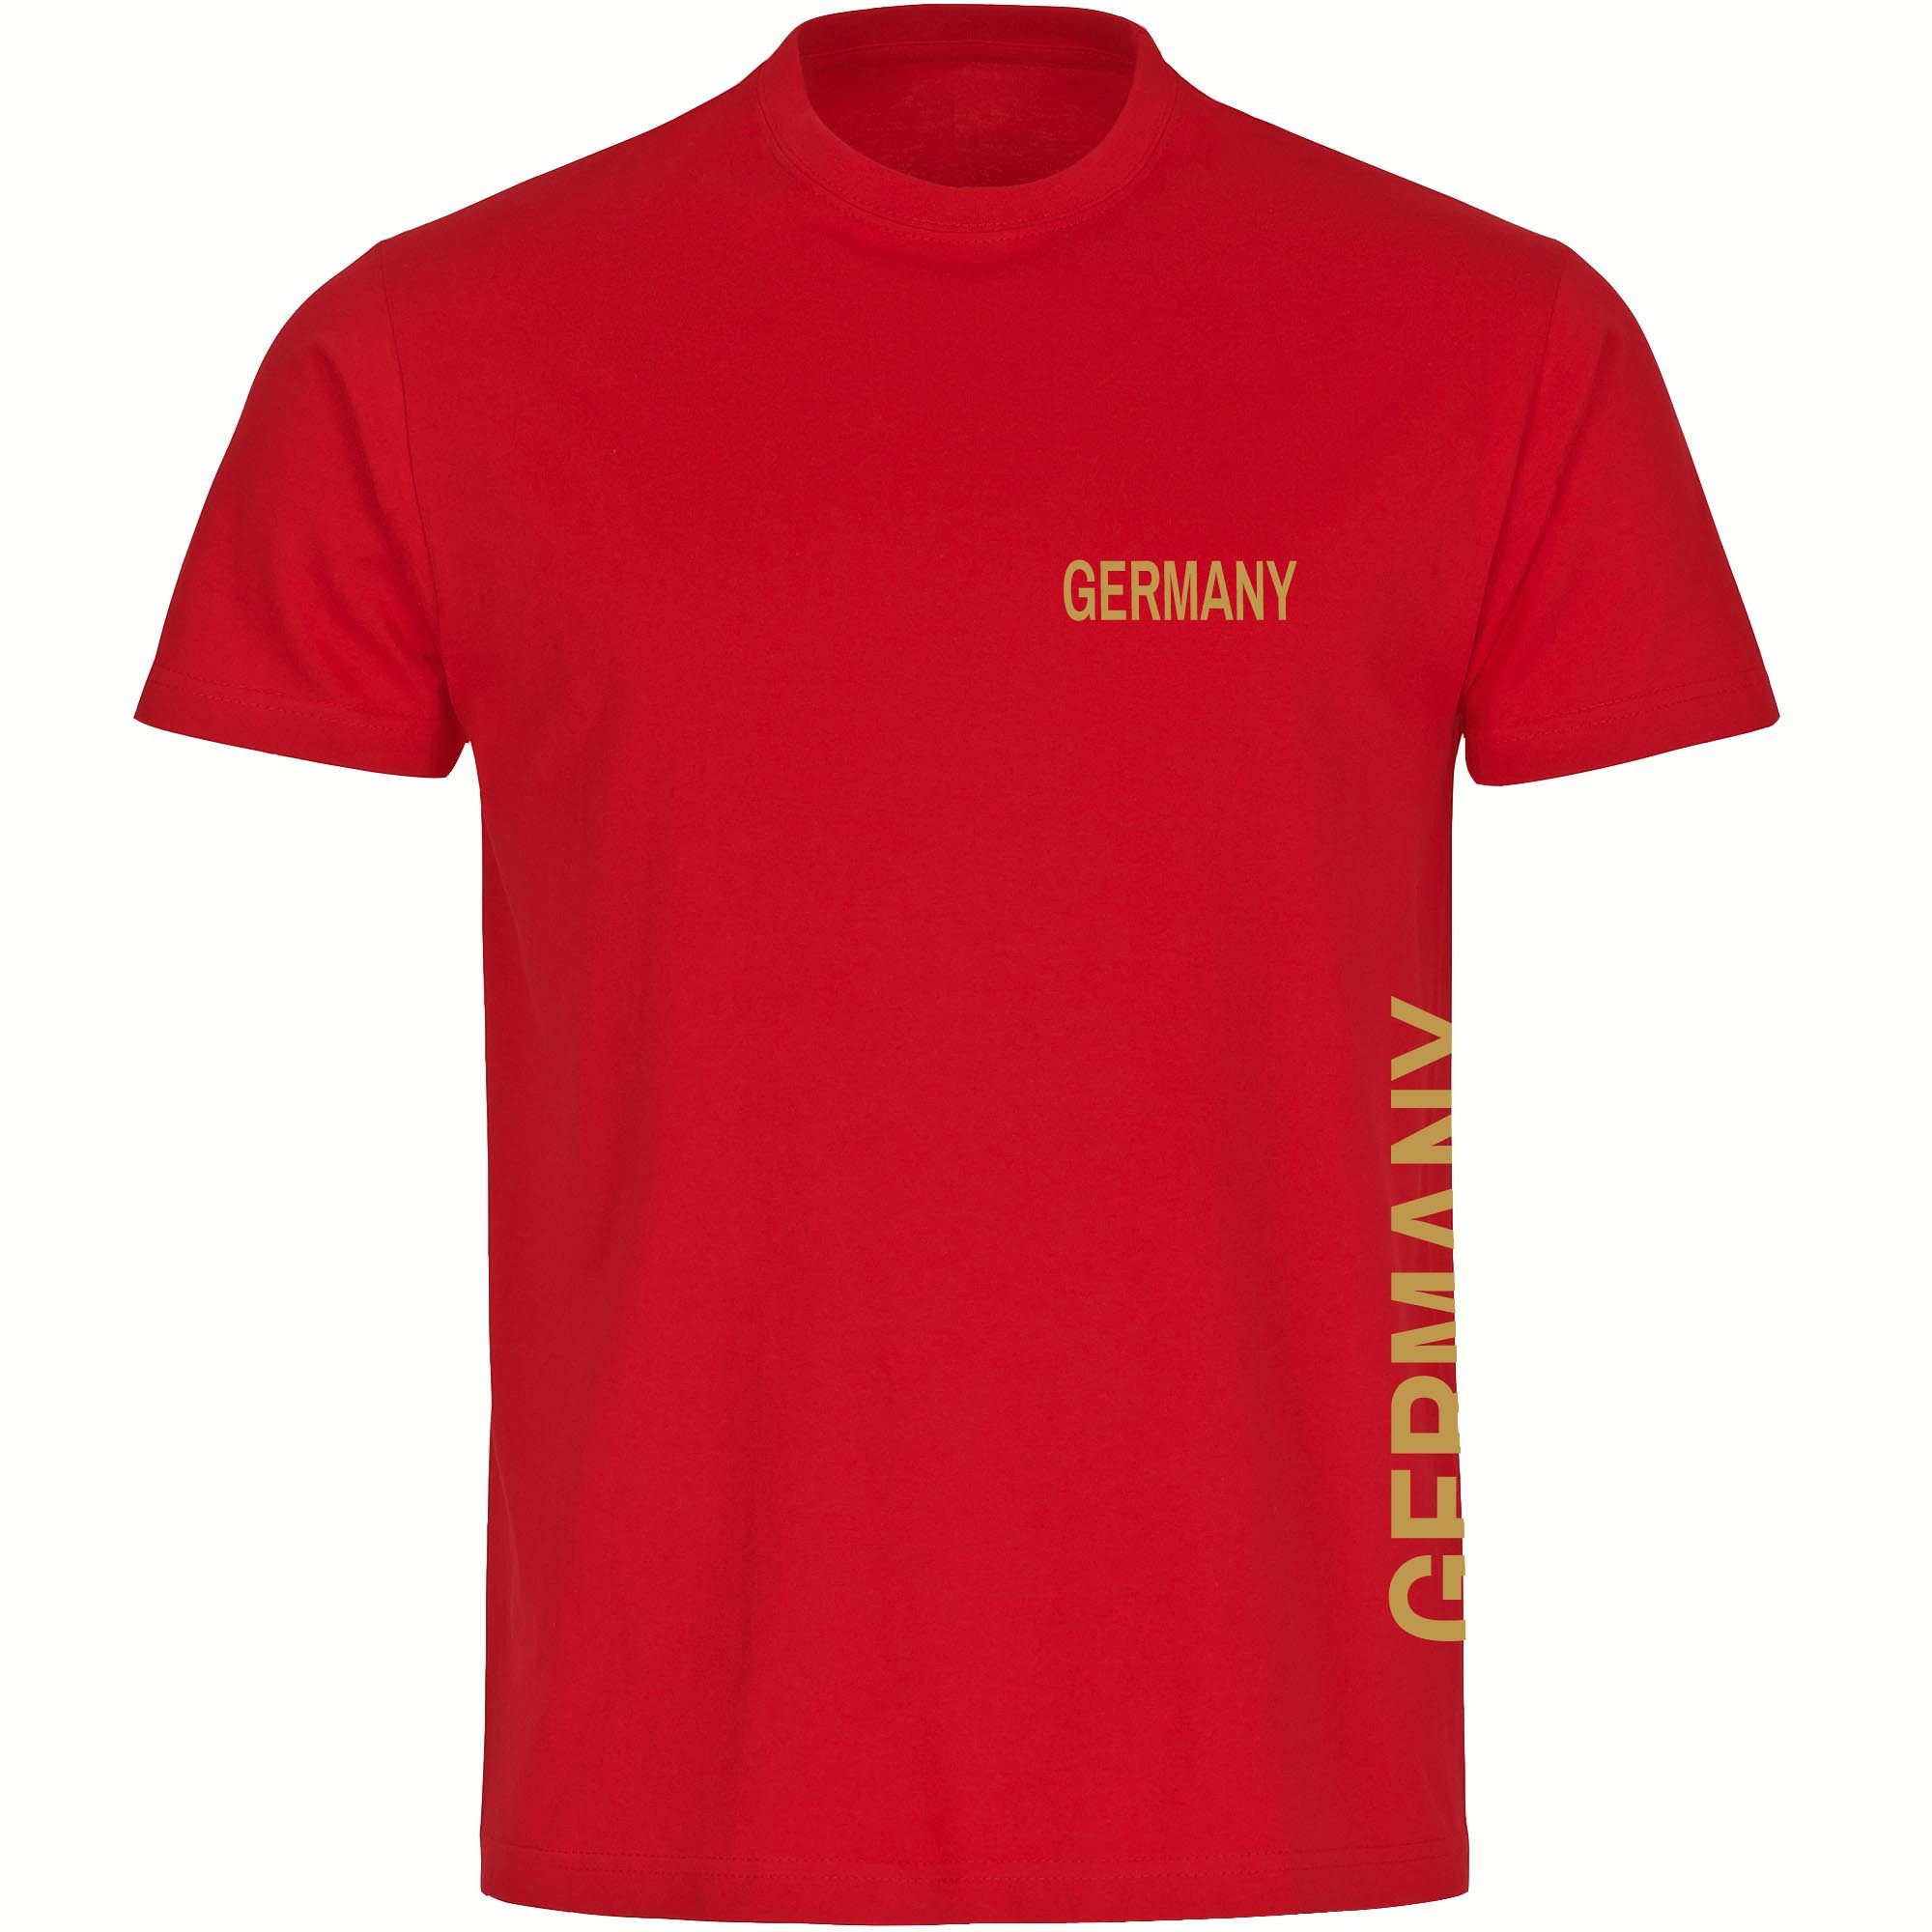 multifanshop T-Shirt Kinder Germany - Brust & Seite Gold - Boy Girl